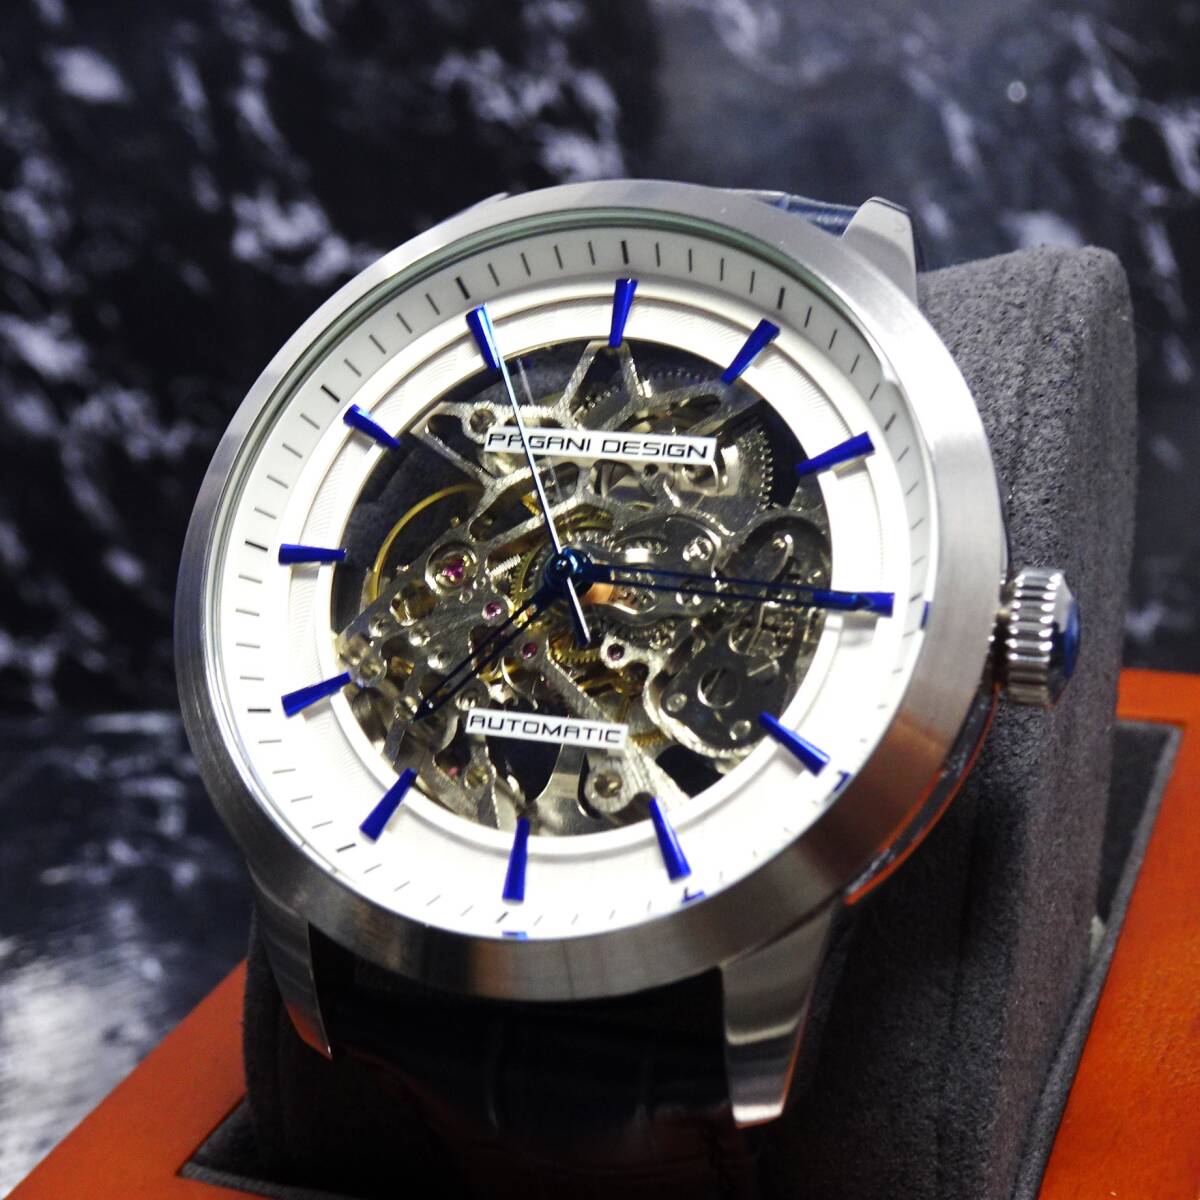 送料無料・新品・パガーニデザインPAGANI DESIGN腕時計メンズスケルトンメカニカルウォッチ自動巻きクロコ型押し本革腕時計PD-1638